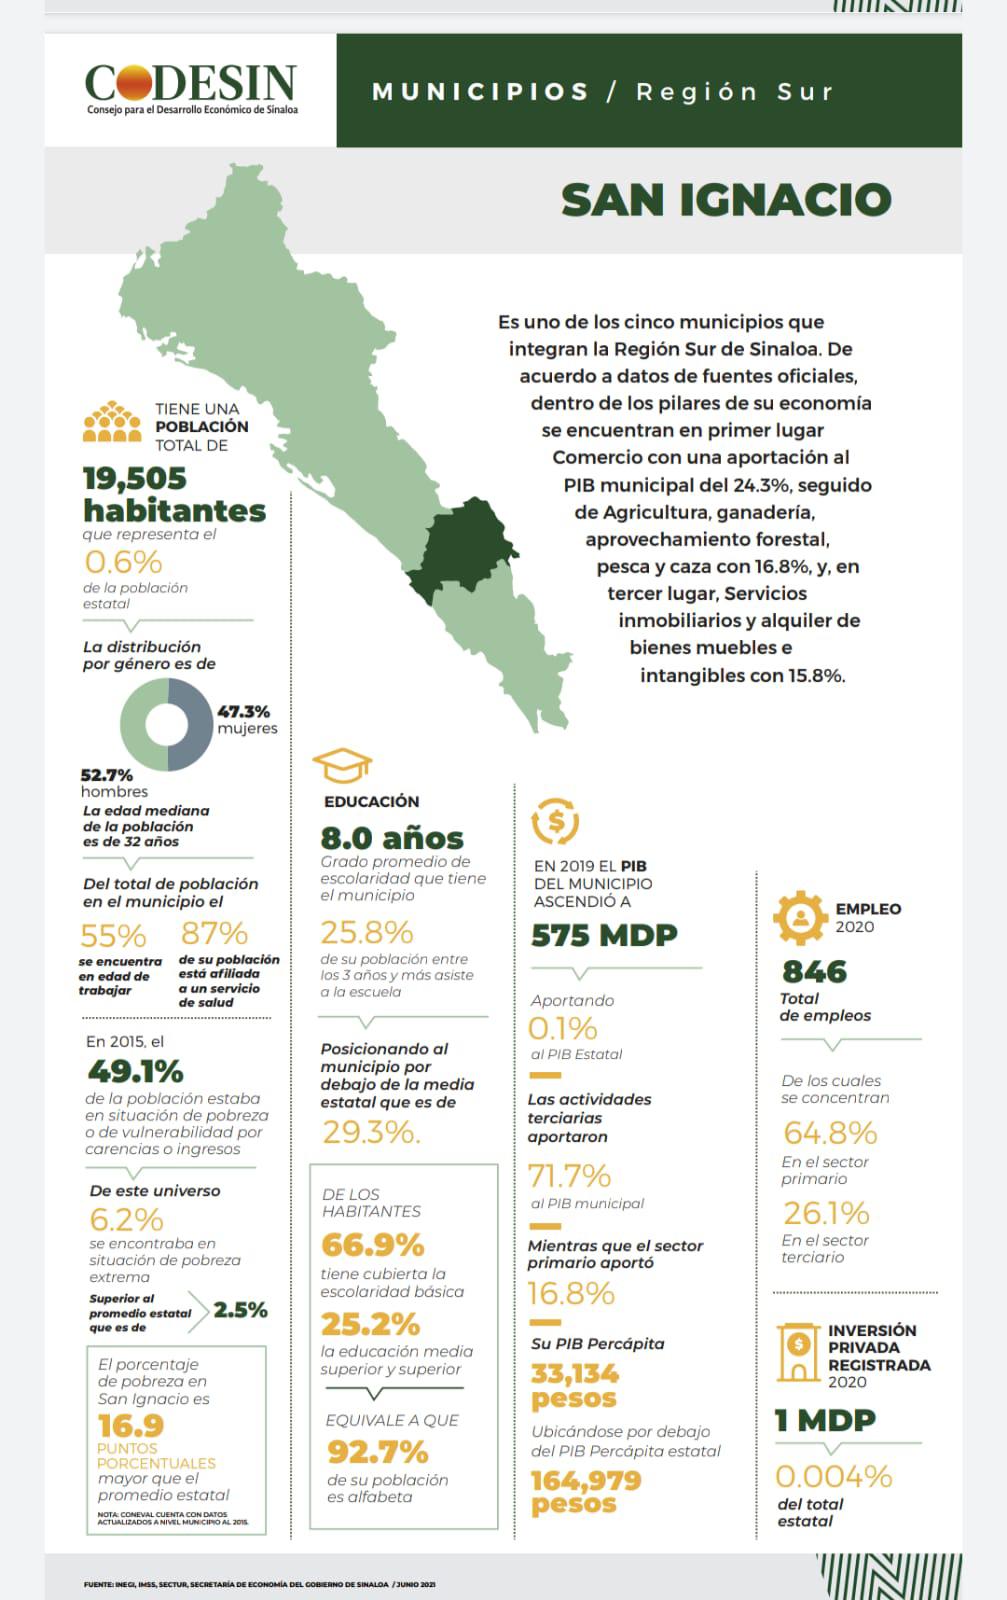 $!Sur de Sinaloa aporta el 21.8 % del PIB al estado: Codesin